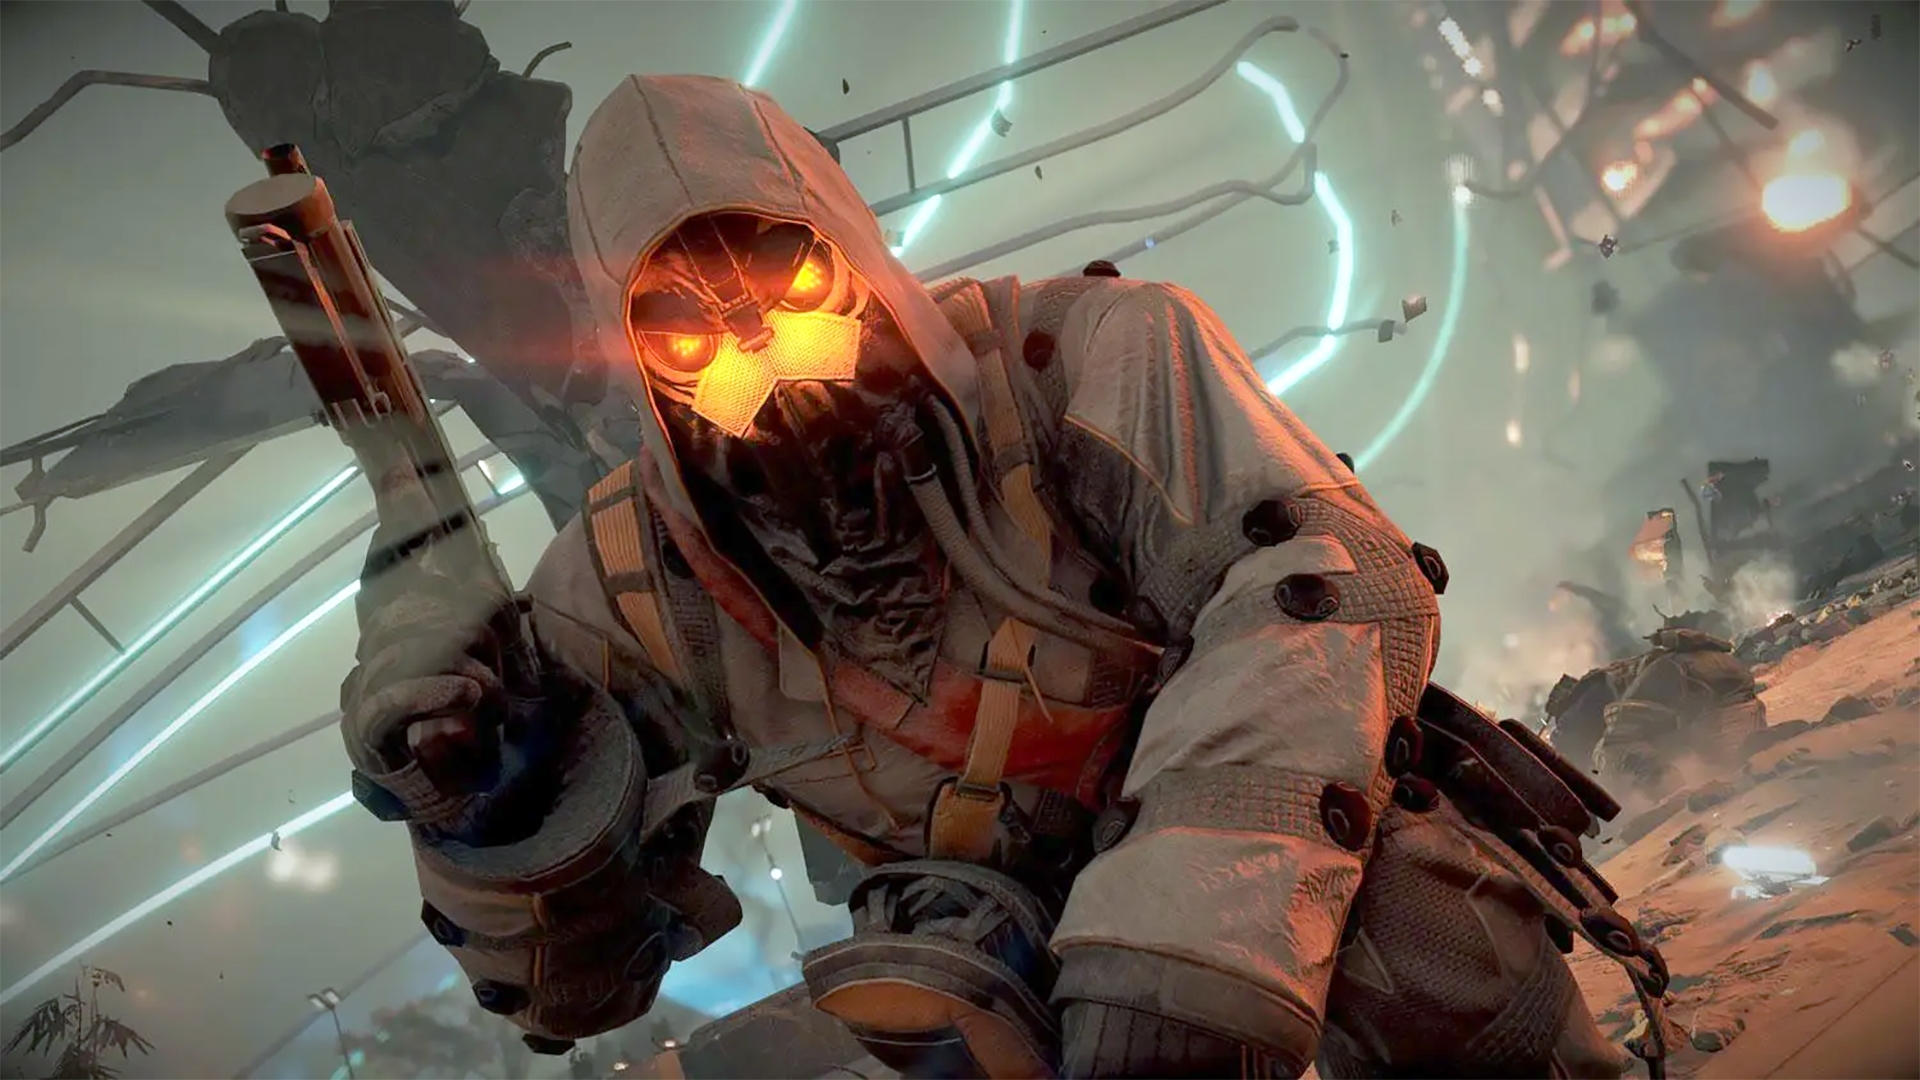 Killzone 3' gives Sony its long-awaited 'Halo' killer